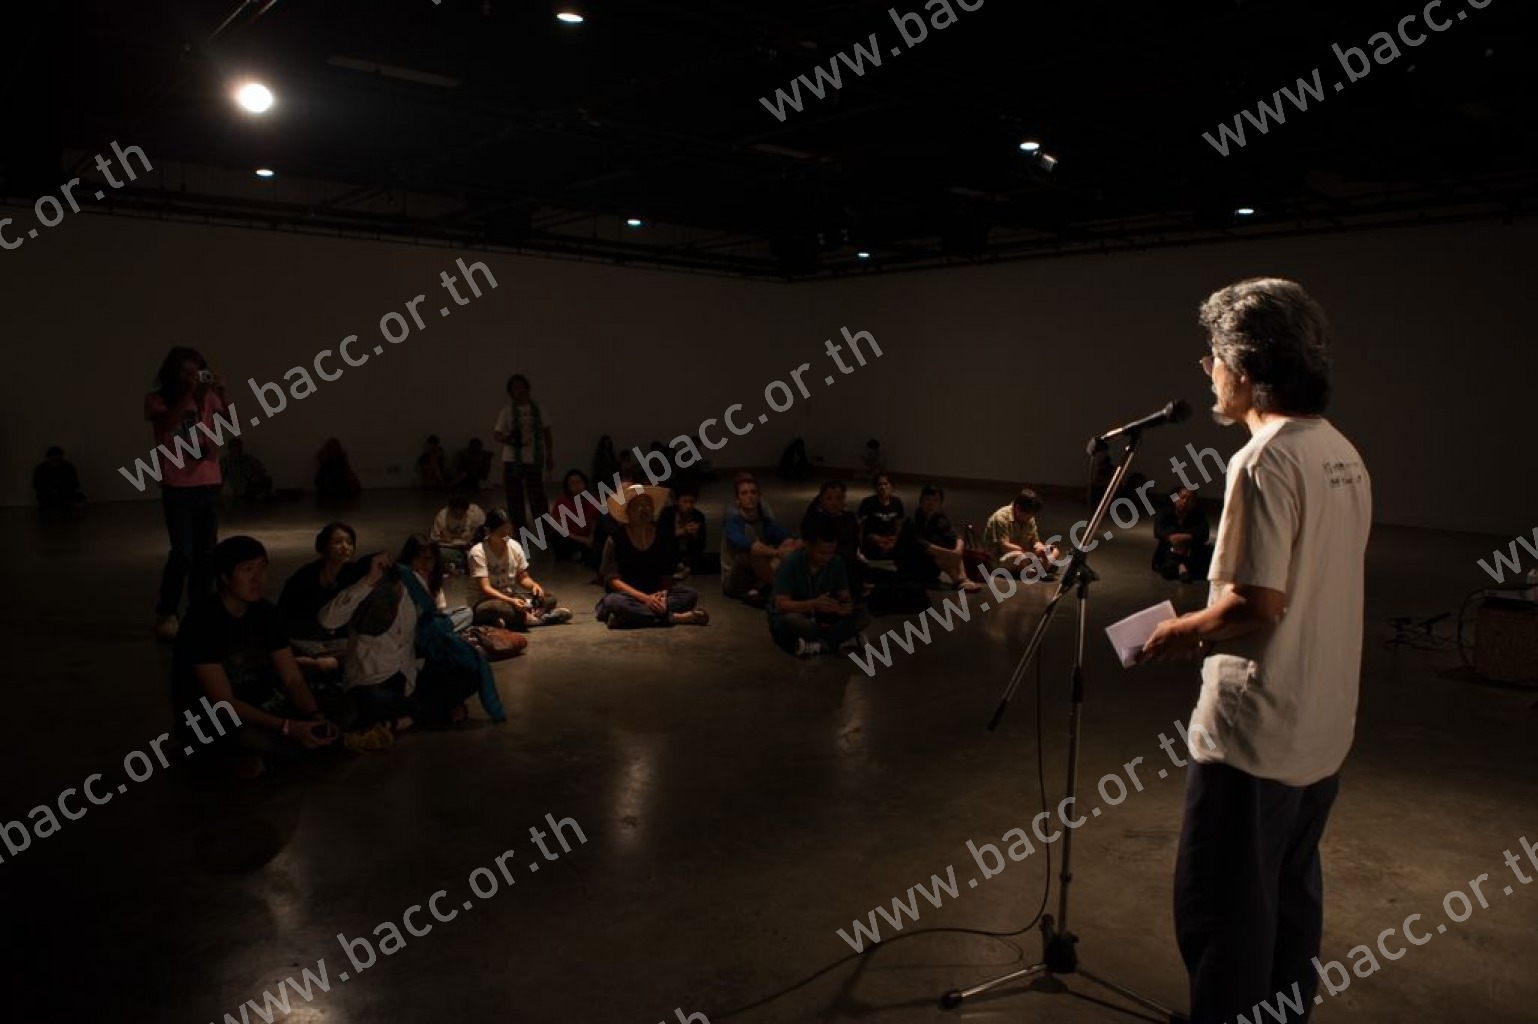 การแสดงภายใต้เทศกาลศิลปะการแสดง ครั้งที่ 4 : Asiatopia International Performance Art Festival